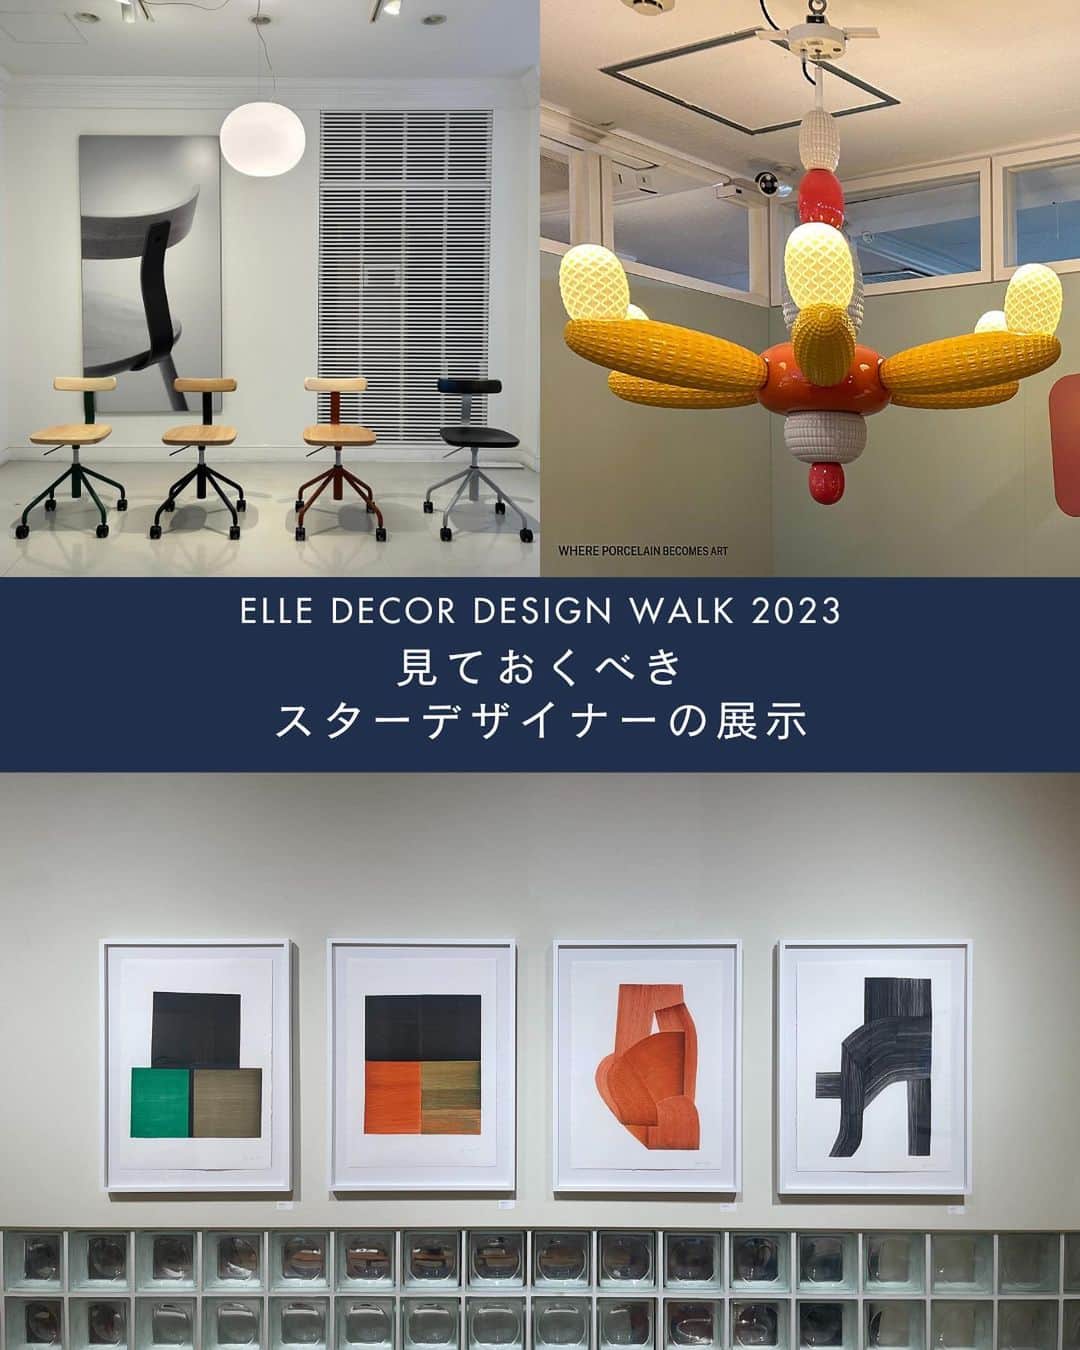 ELLE DECOR JAPANのインスタグラム：「11月3日（金・祝）まで、『エル・デコ』が最新のデザイン情報に出合えるデザインイベント #エルデコデザインウォーク が開催中！  今回は、編集部が選んだ「見ておくべきスターデザイナーの展示」をご紹介。注目のポイントをチェックして、ショップ巡りに出かけよう✨  ・マルニ東京×ジャスパー・モリソン ・イデーショップ 六本木×ロナン・ブルレック ・リヤドロ銀座サテライトブティック×ルカ・ニケット  Text : Ayako Takahashi  #エルデコデザインウォーク #エルデコデザインウォーク2023 #elledecordesignwalk #elledecordesignwalk2023 #秋のイベント #インテリアショップ巡り #インテリア好き #イベント情報 #マルニ東京 #イデーショップ #イデーショップ 六本木  #リヤドロ #リヤドロ銀座サテライトブティック #ジャスパーモリソン  #ronanbouroullec #jaspermorrison」